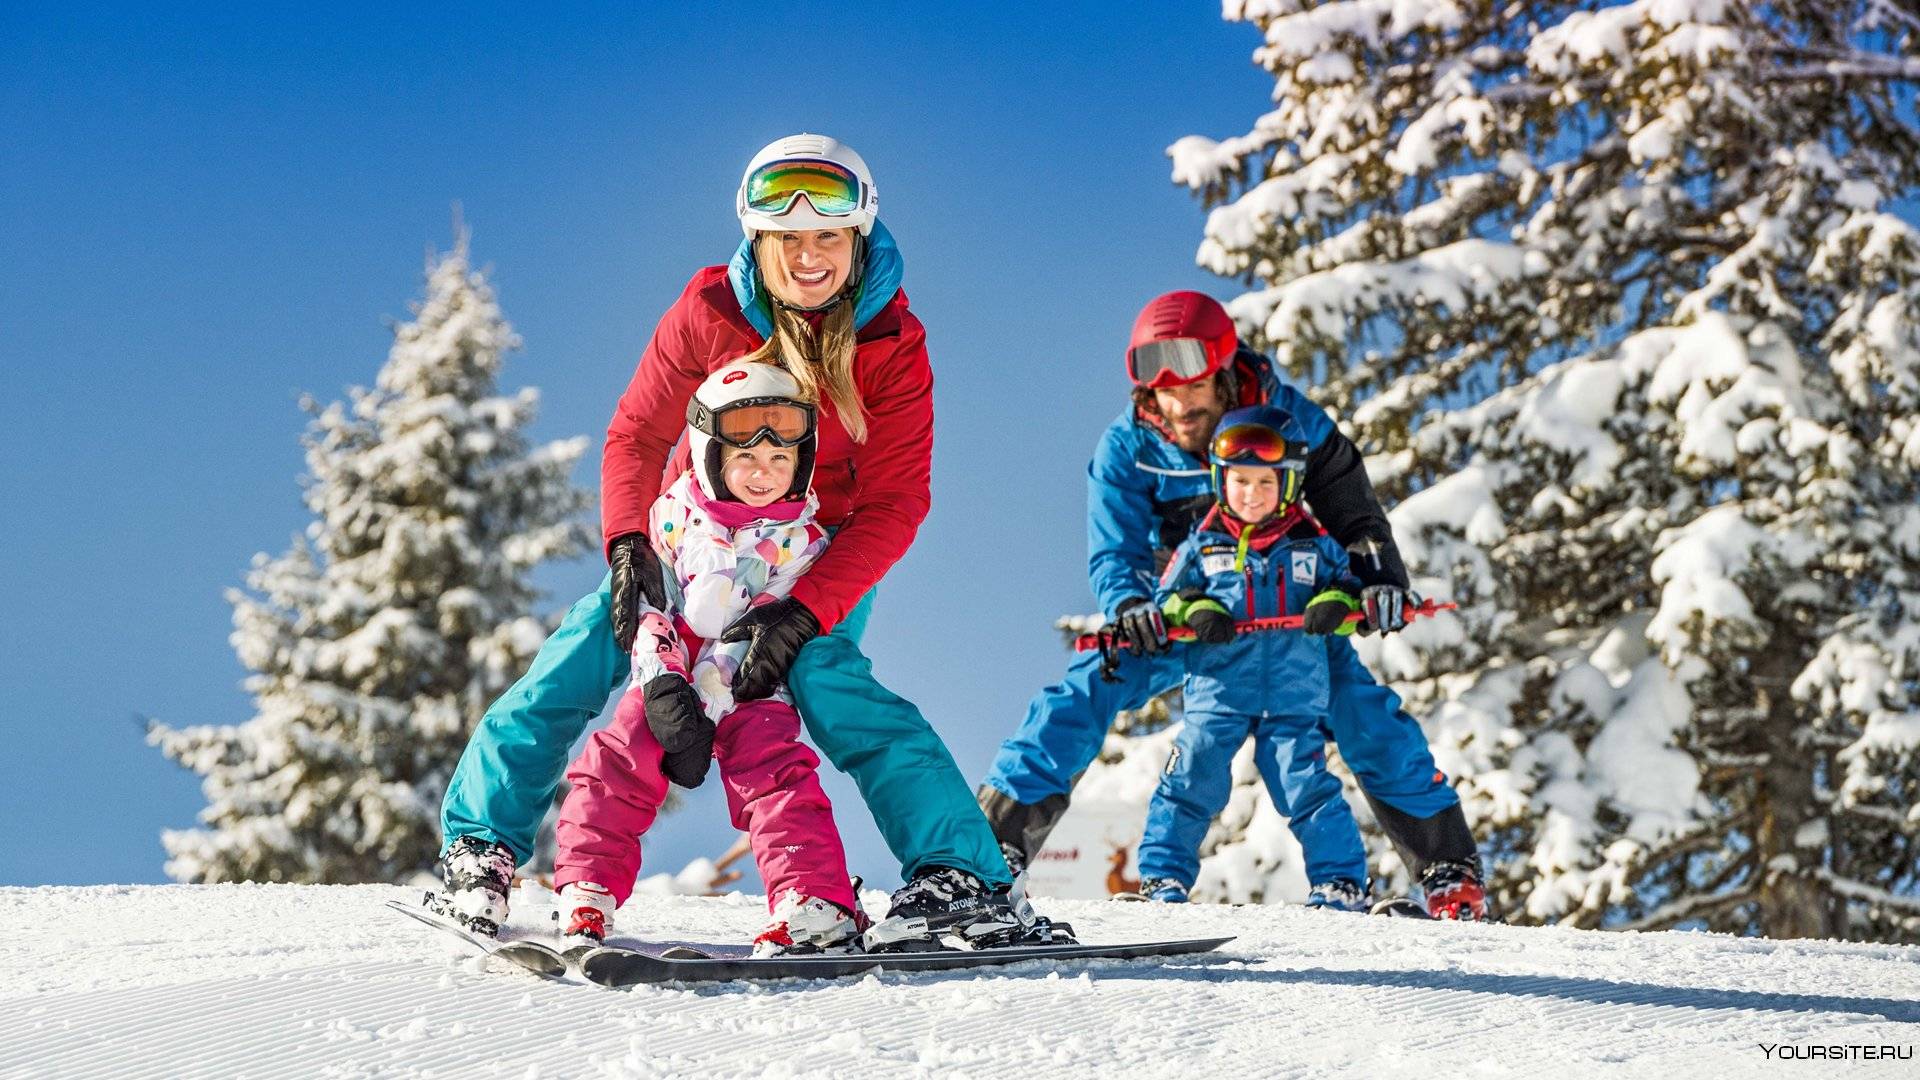 Покататься на горнолыжном курорте. Спортивная семья зимой. Катание на горных лыжах. Дети на горнолыжном курорте. Семья с детьми на лыжах.